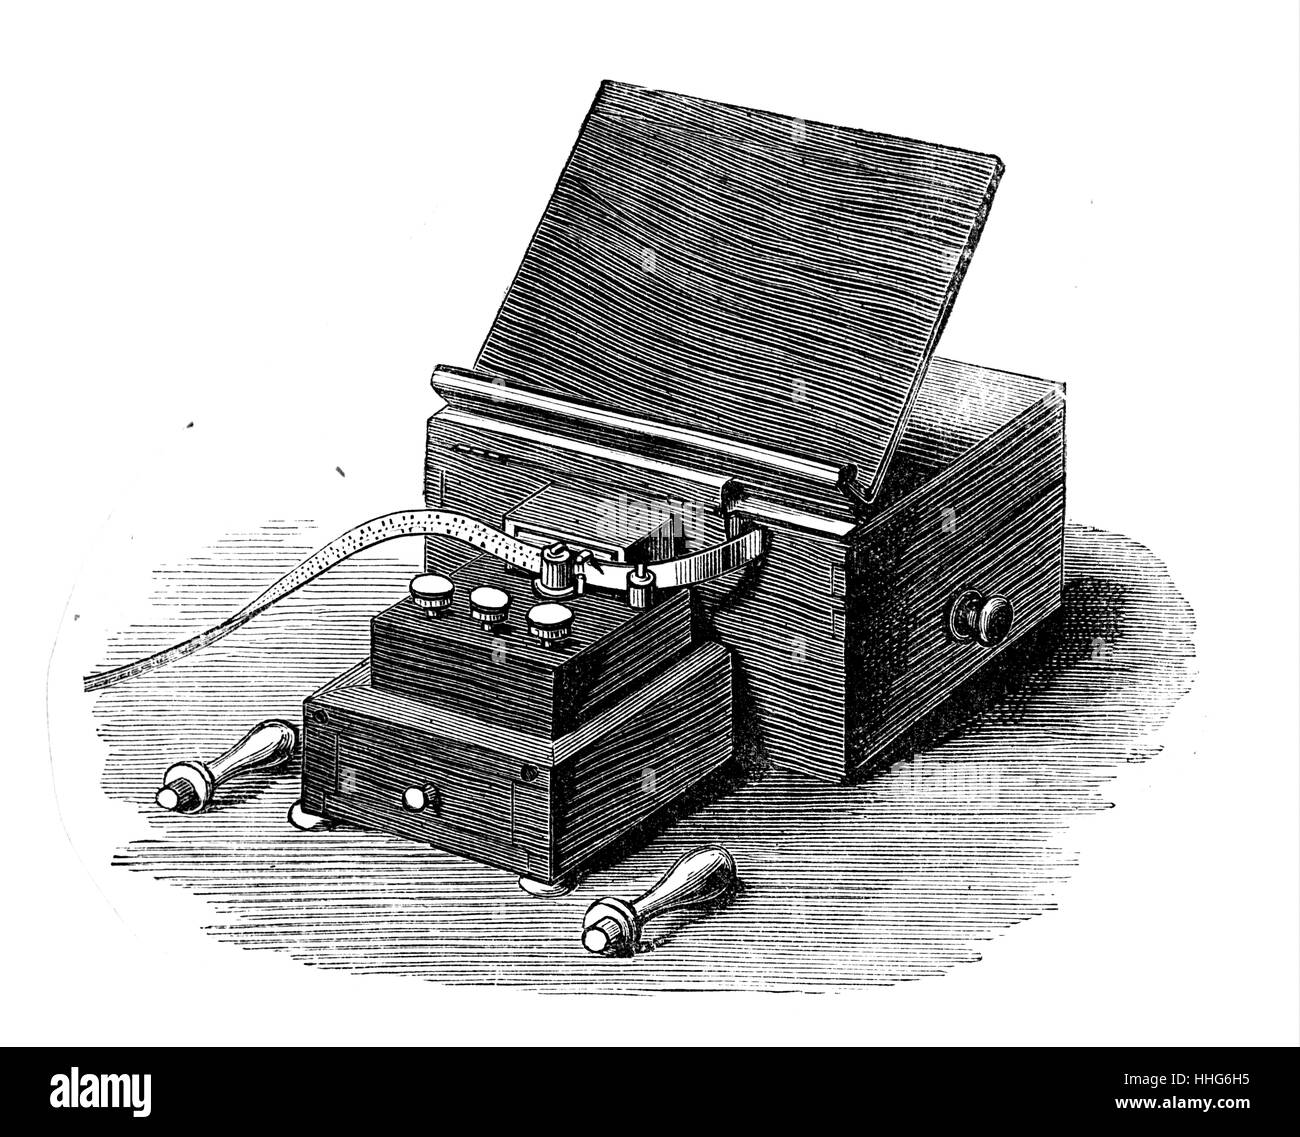 Machine de perforation pour la préparation des messages en Morse sur les télégraphes. Présenté à l'Exposition International de l'électricité au Crystal Palace. Banque D'Images